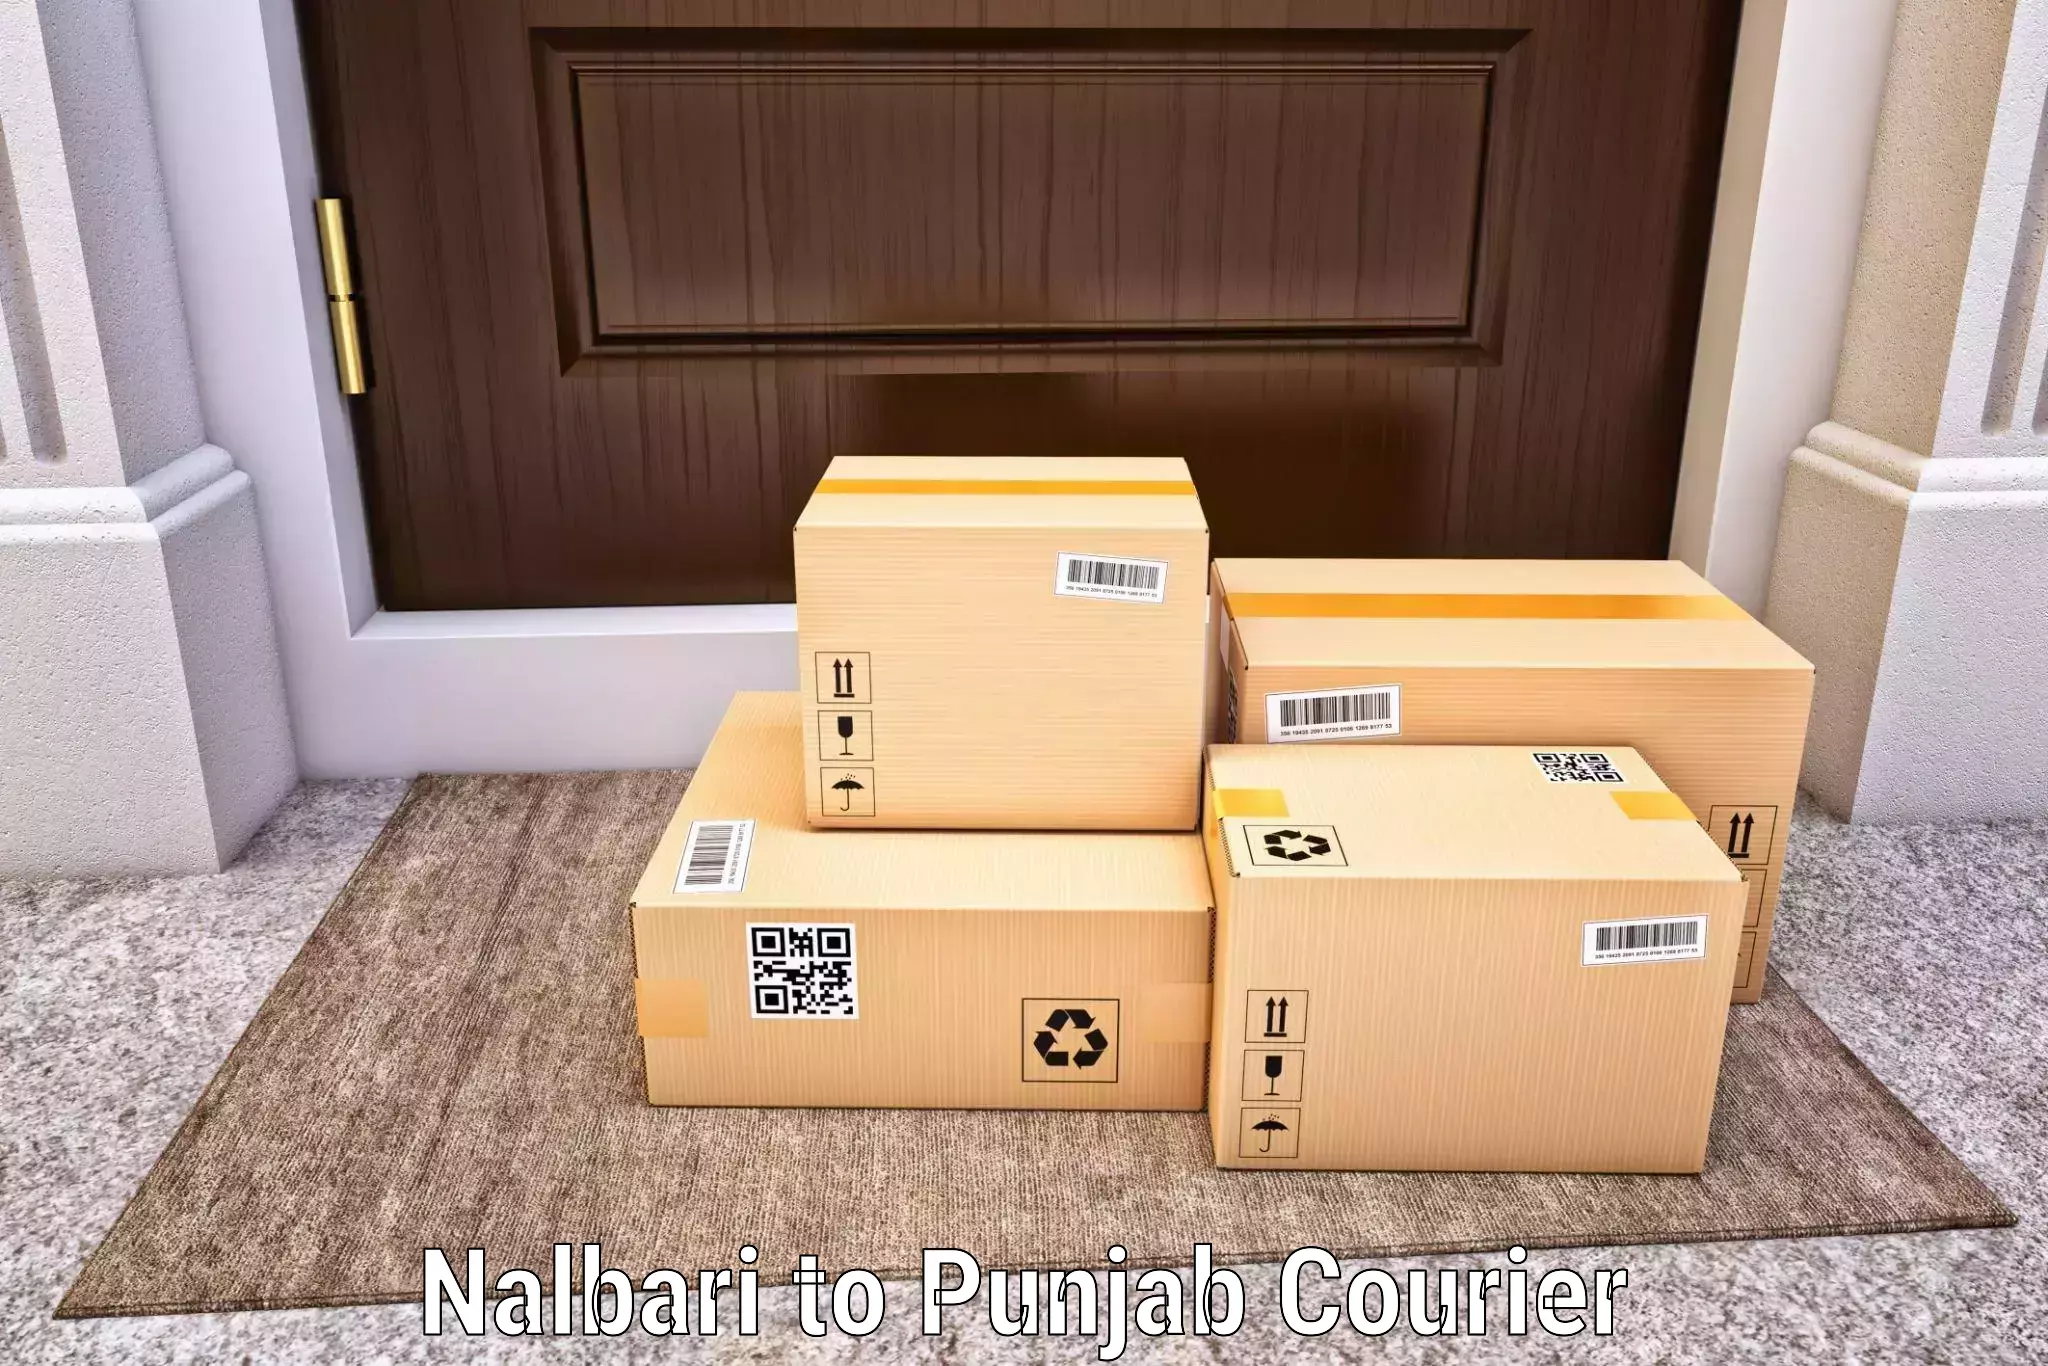 Package tracking Nalbari to Sirhind Fatehgarh